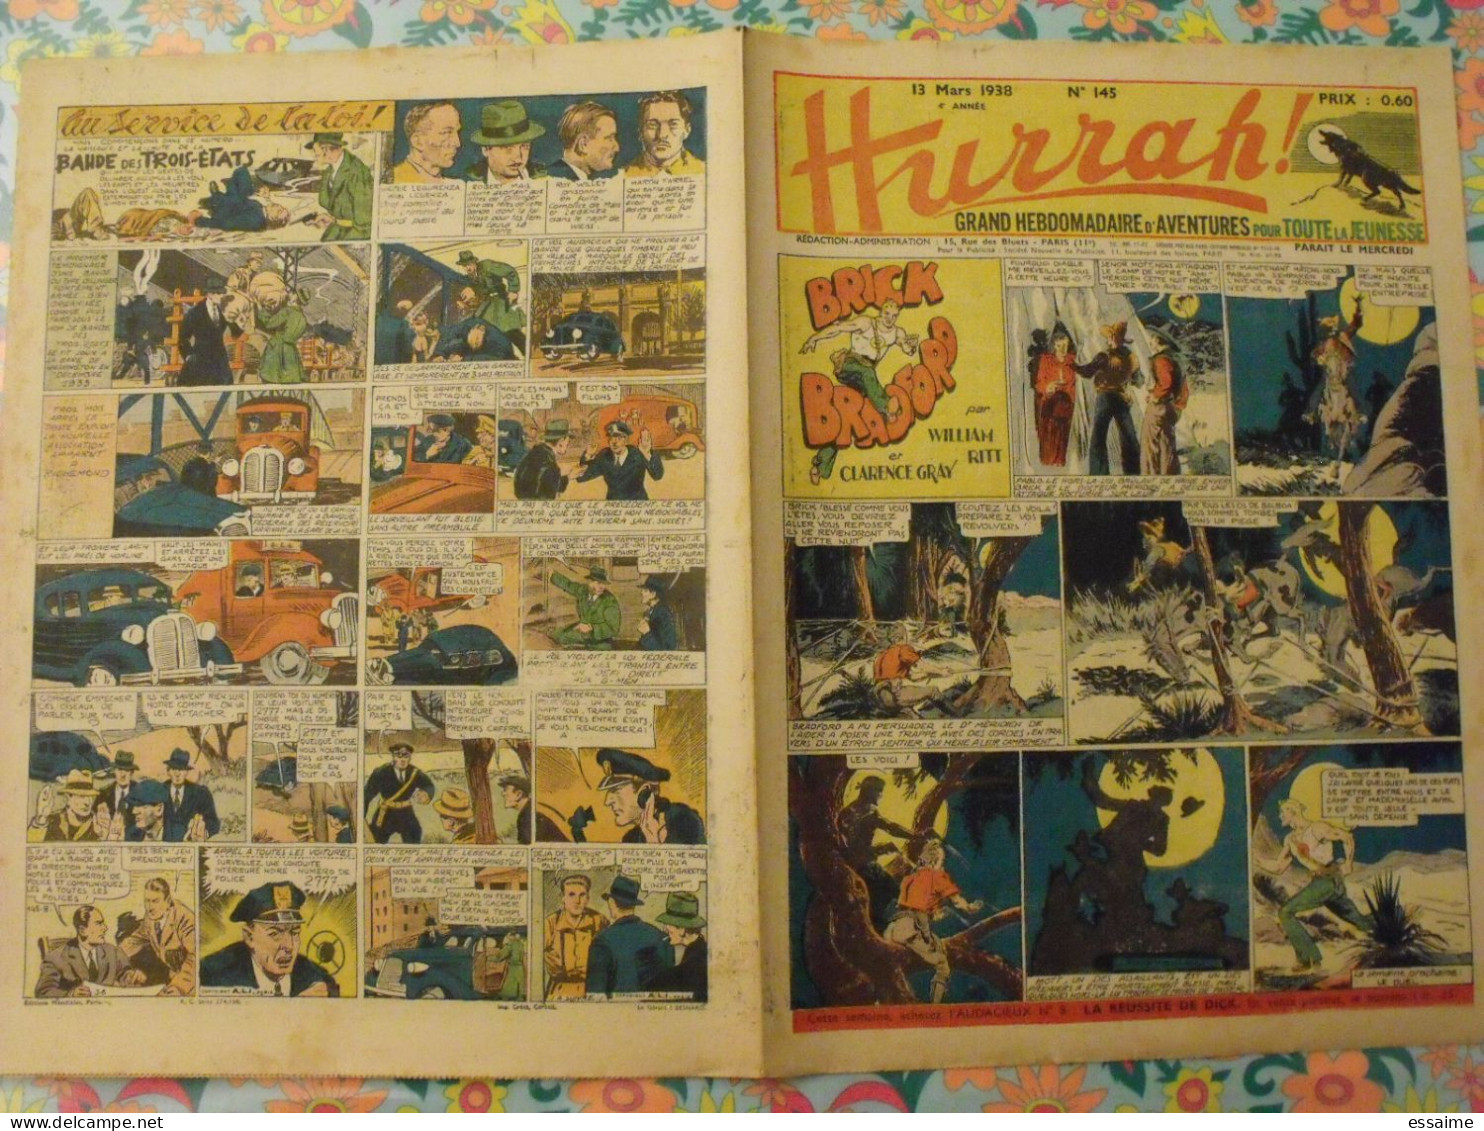 5 n° de Hurrah ! de 1938. Brick Bradford, dick l'intrépide, le roi de la police montée, gordon. A redécouvrir